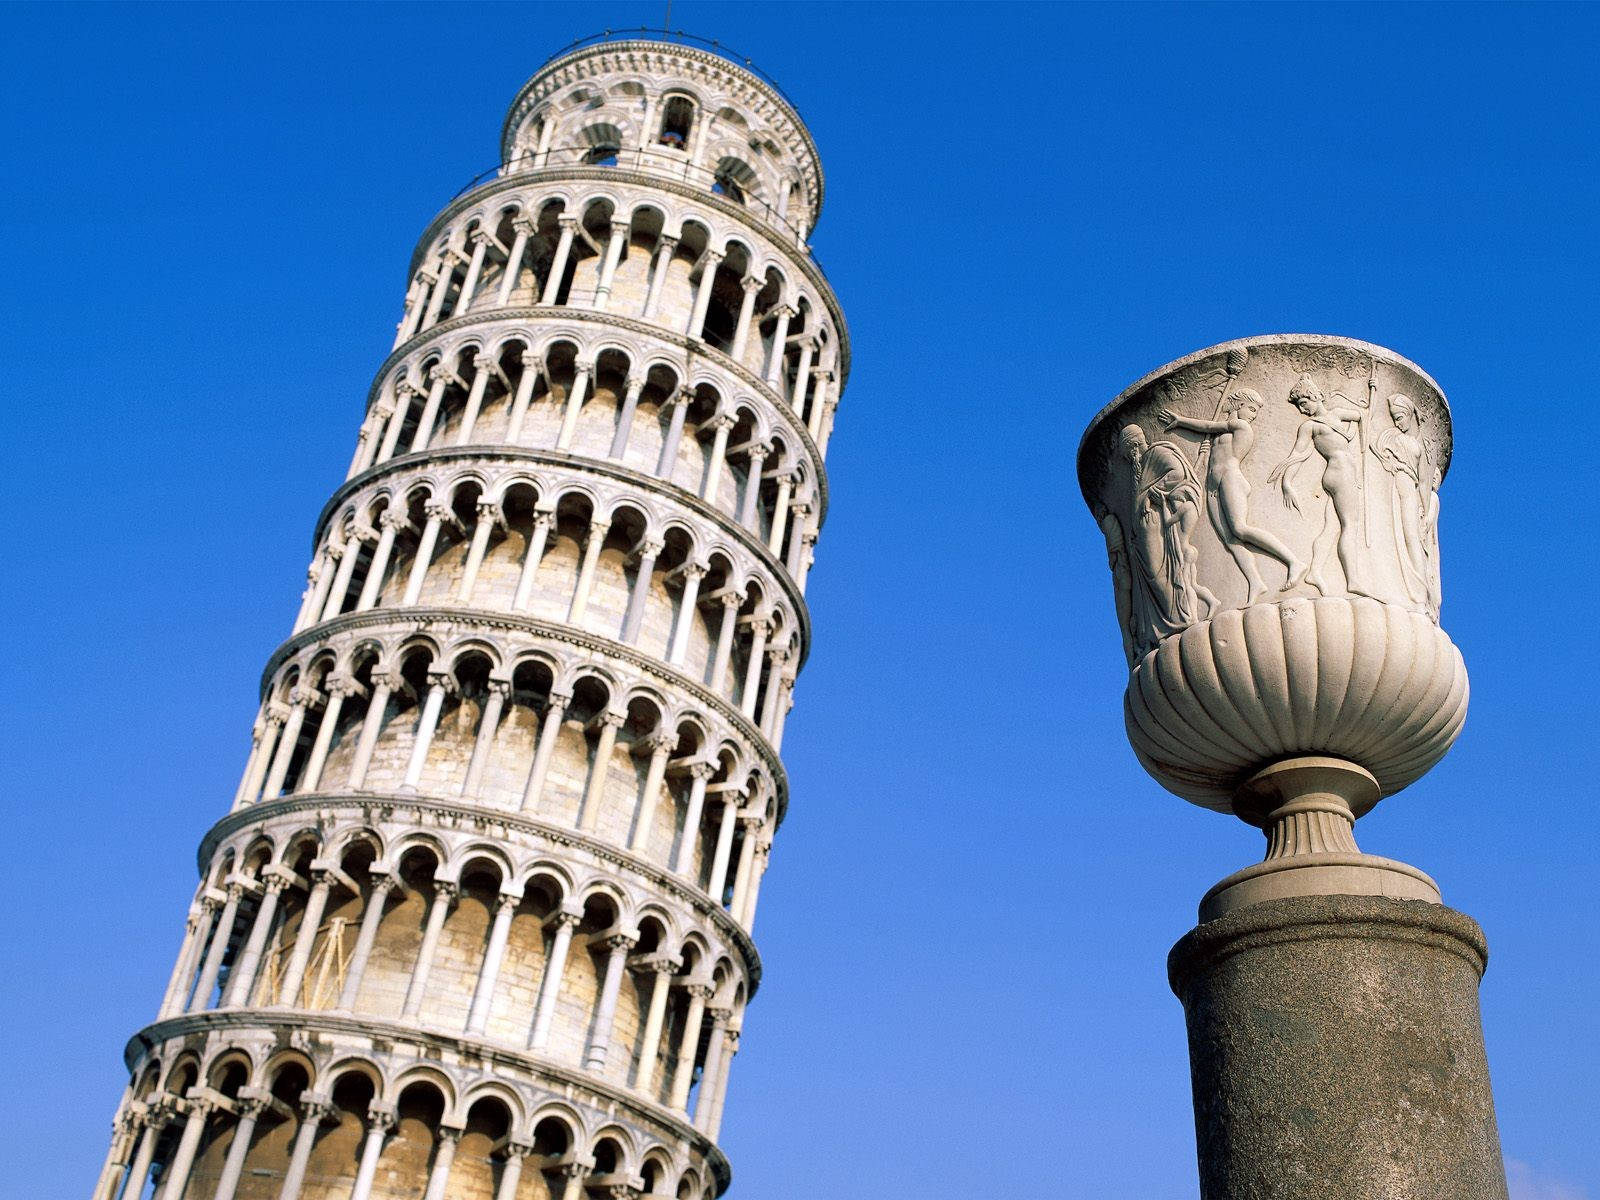 Leaning Tower Of Pisa typografien pynte toppen af uret. Wallpaper